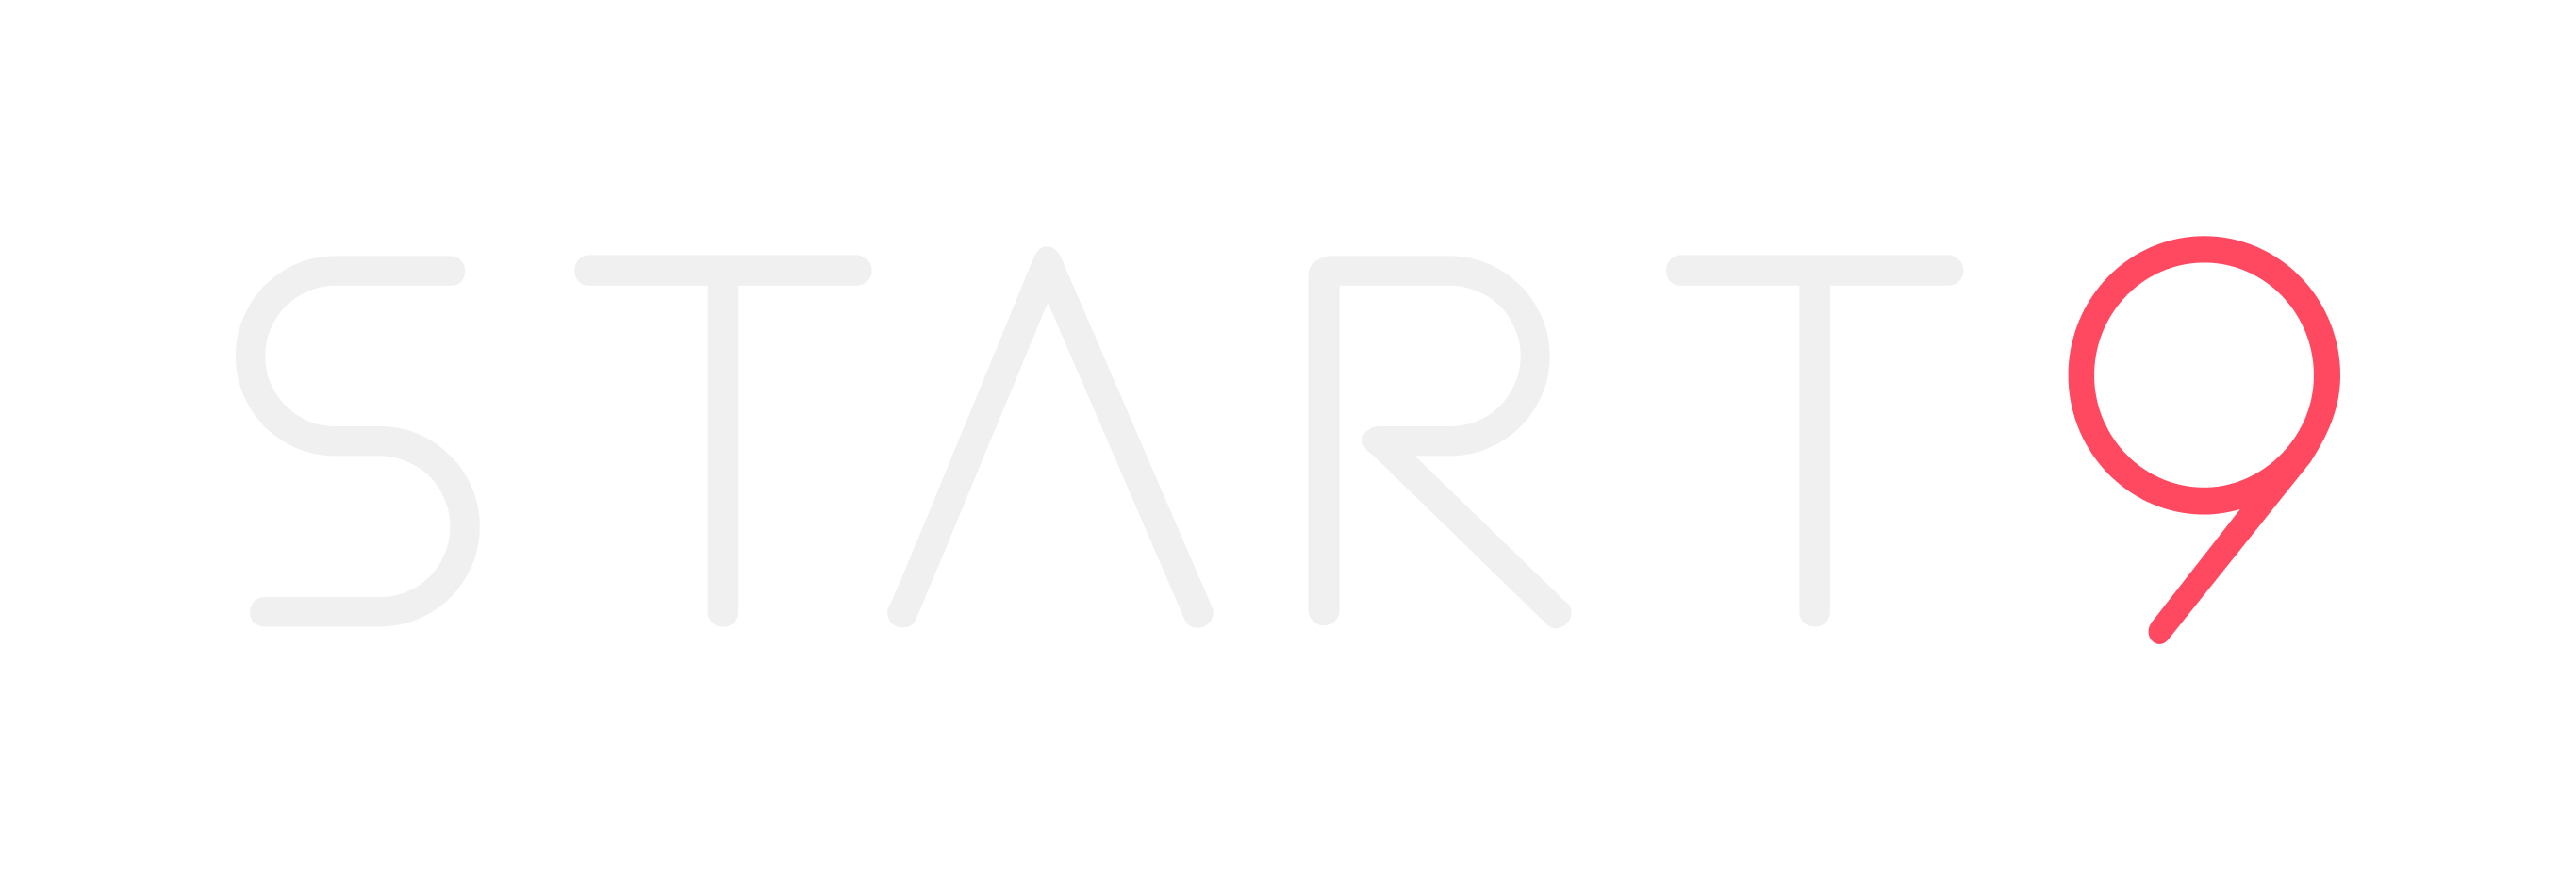 Start9 Community